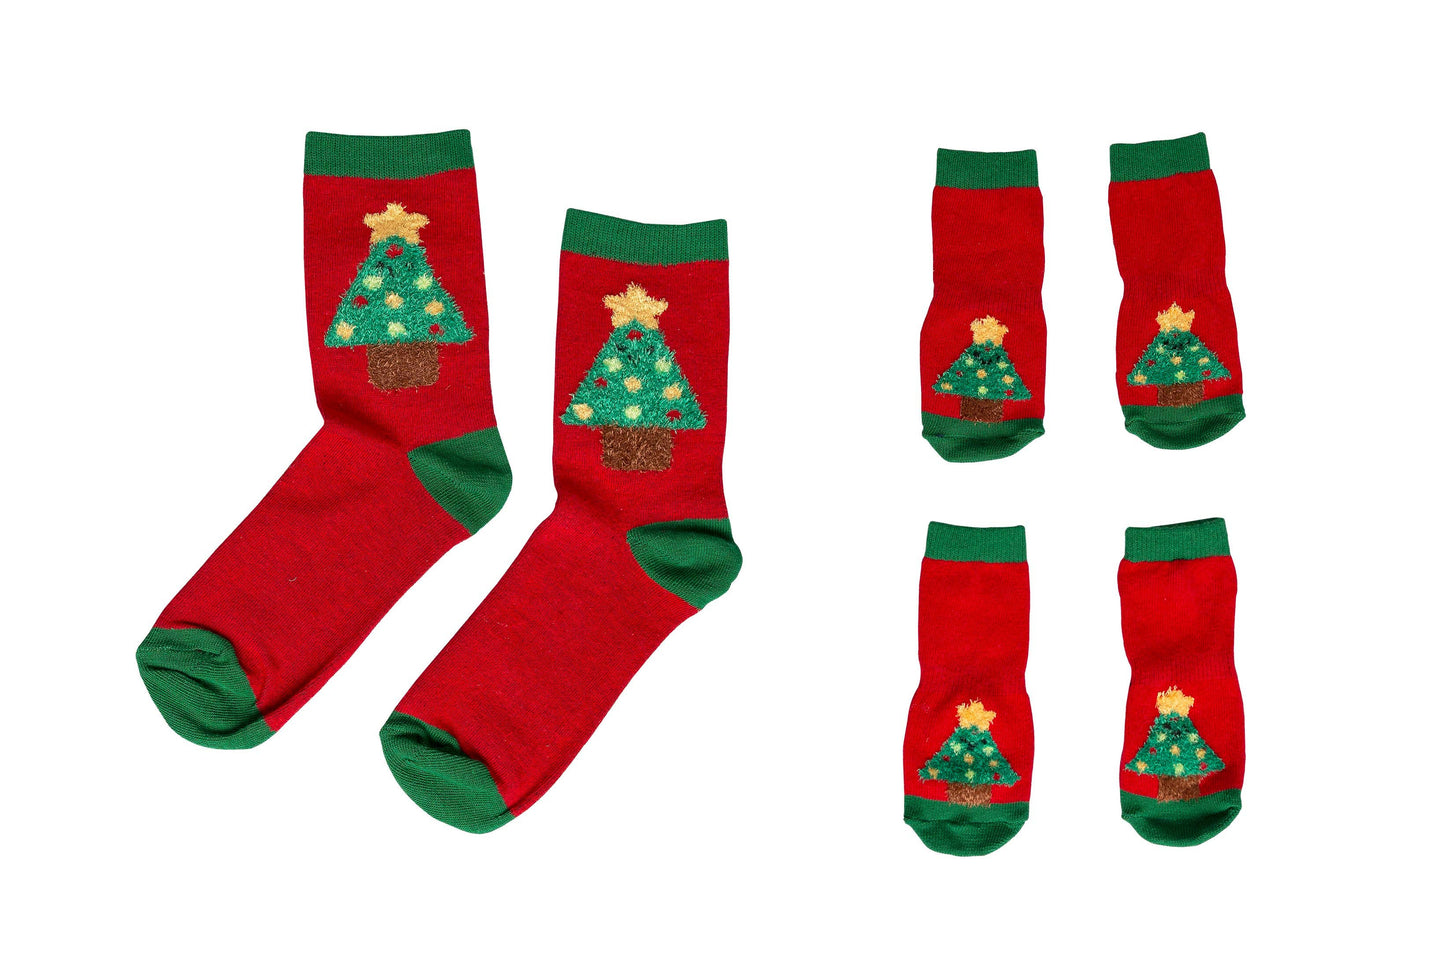 Human and Dog Matching Christmas Sock Set, Christmas Tree